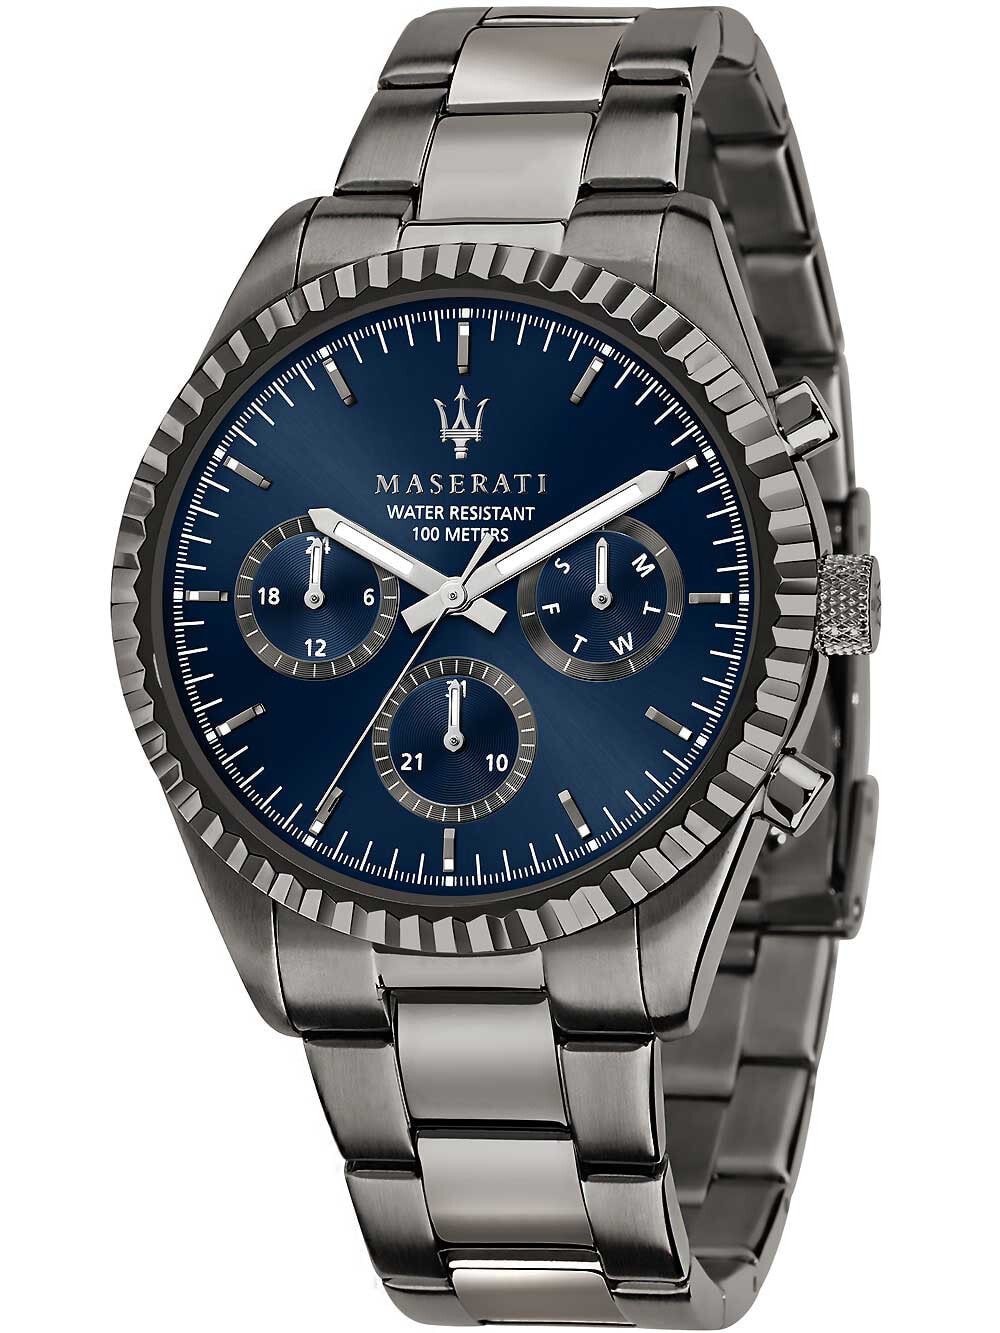 Мужские наручные часы с серебряным браслетом Maserati R8853100019 Competizione mens watch 43mm 10ATM